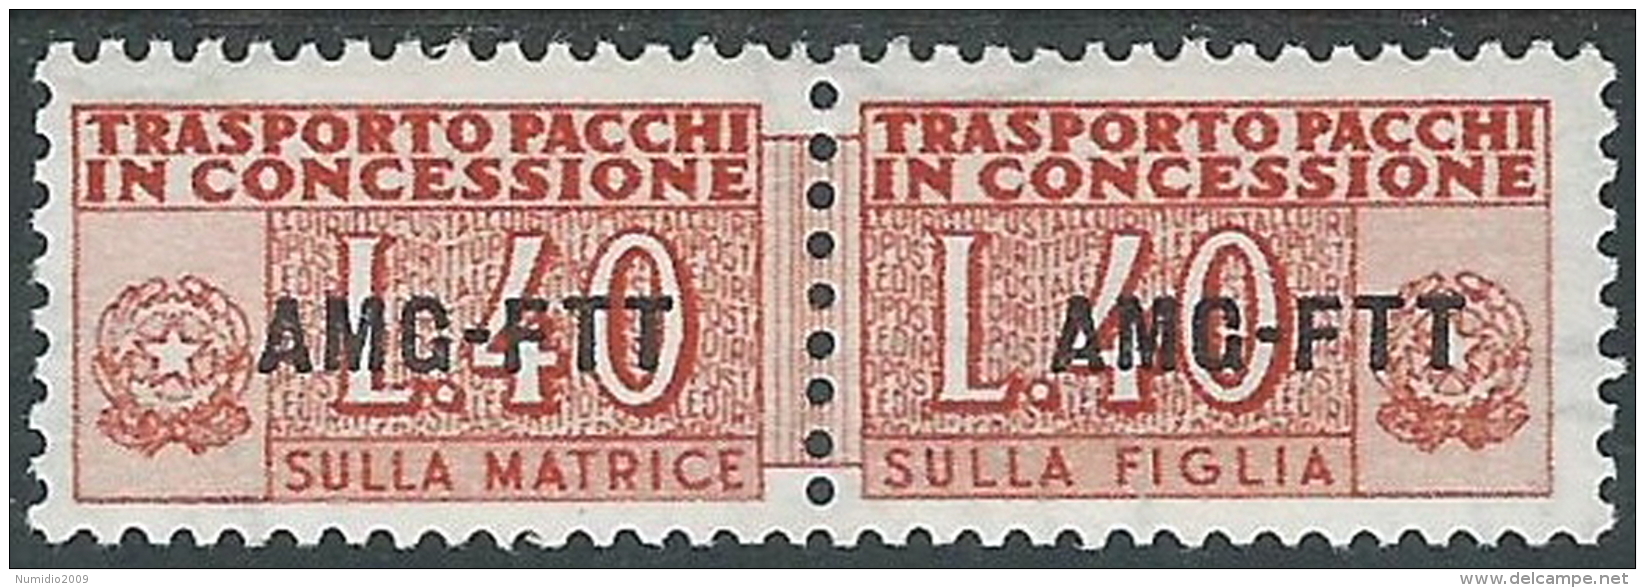 1953 TRIESTE A PACCHI IN CONCESSIONE 40 LIRE MH * - R16 - Postpaketen/concessie